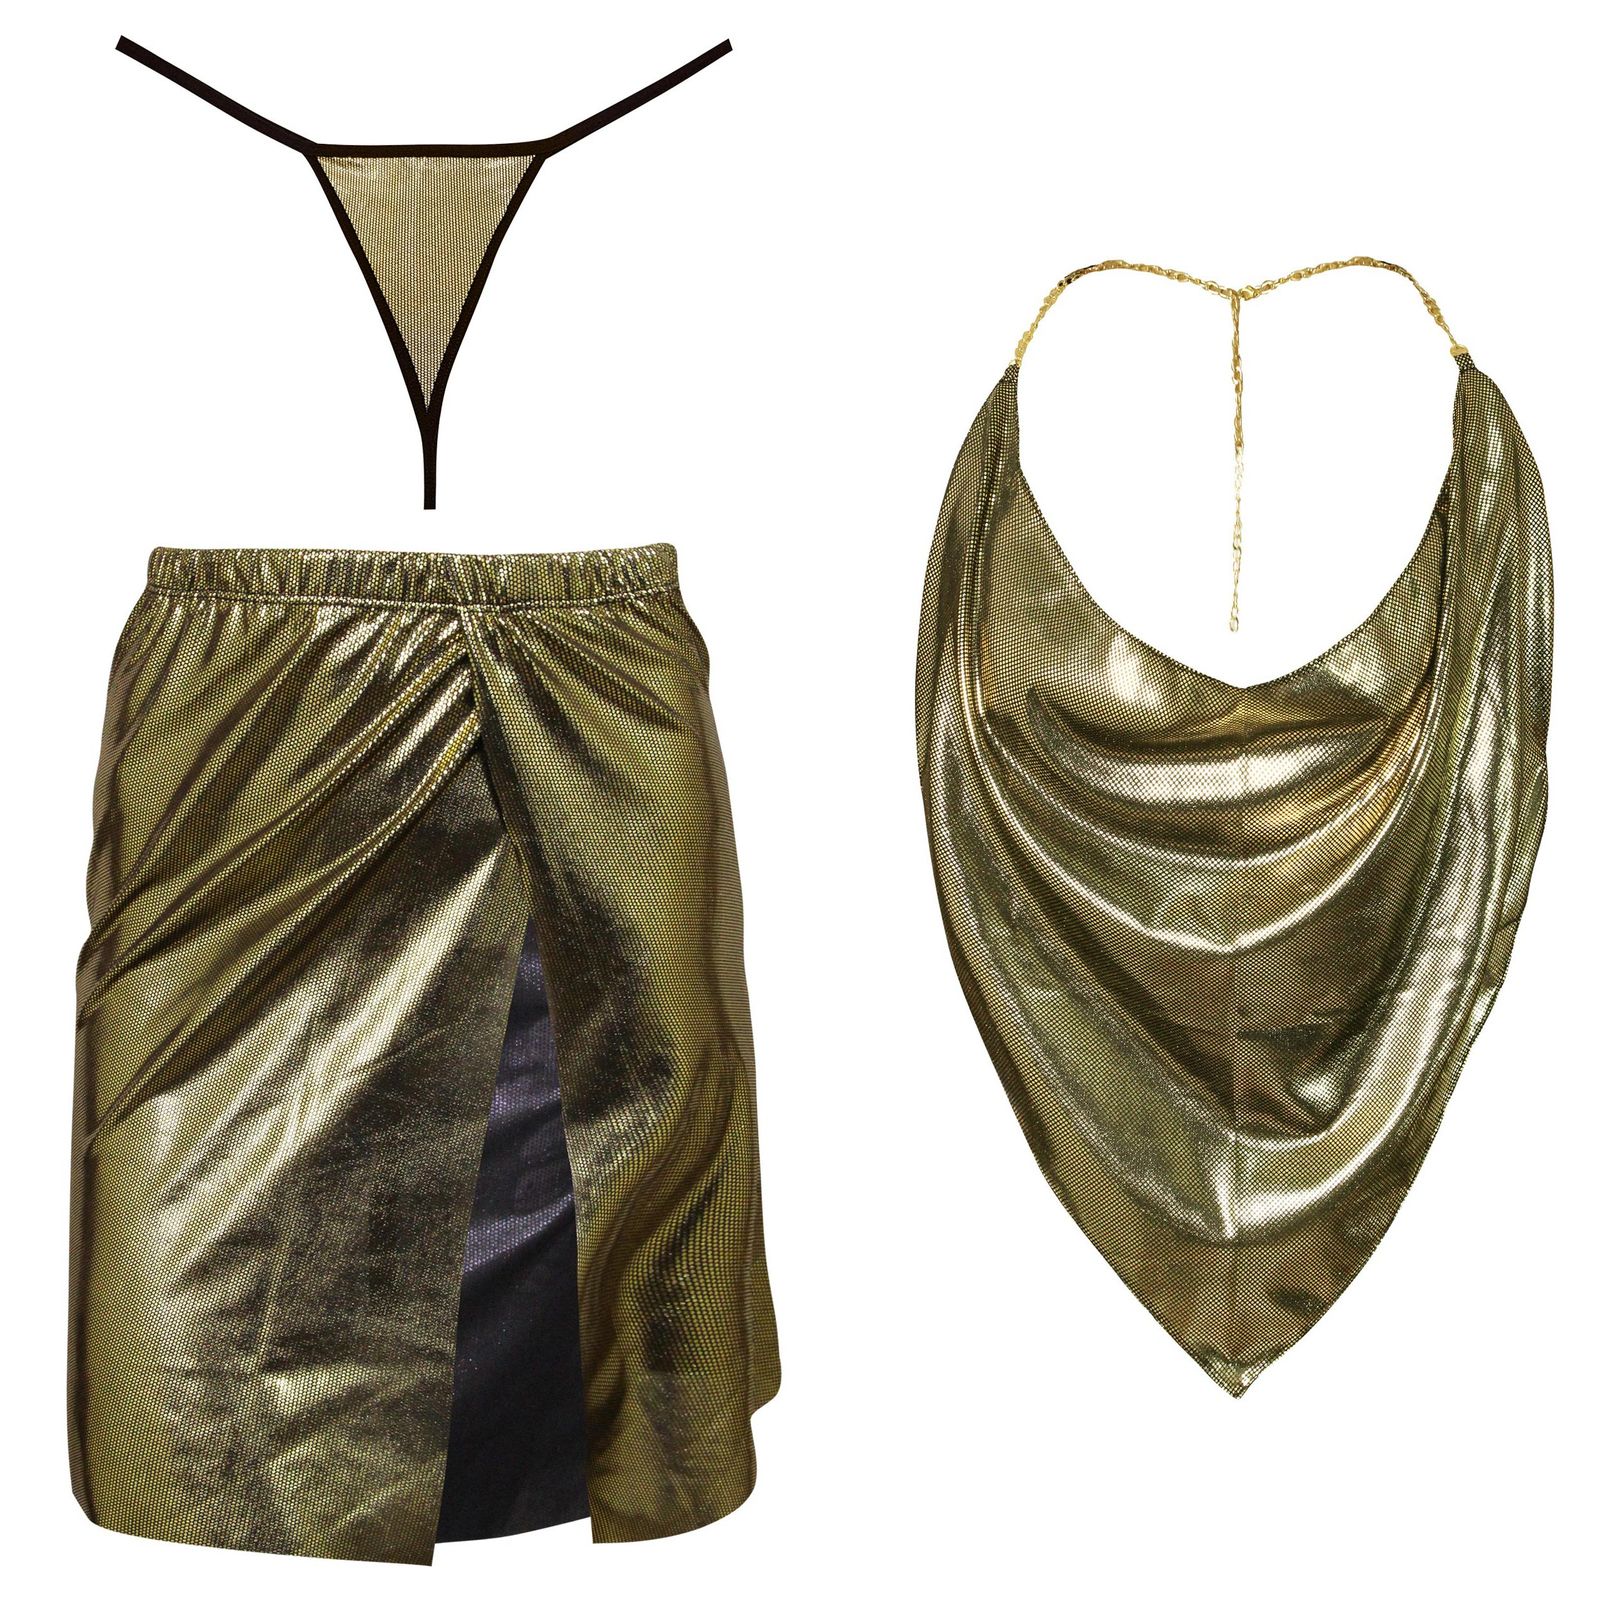 لباس خواب زنانه ماییلدا مدل زنجیر پوست ماری کد 3684-440-G رنگ طلایی -  - 1